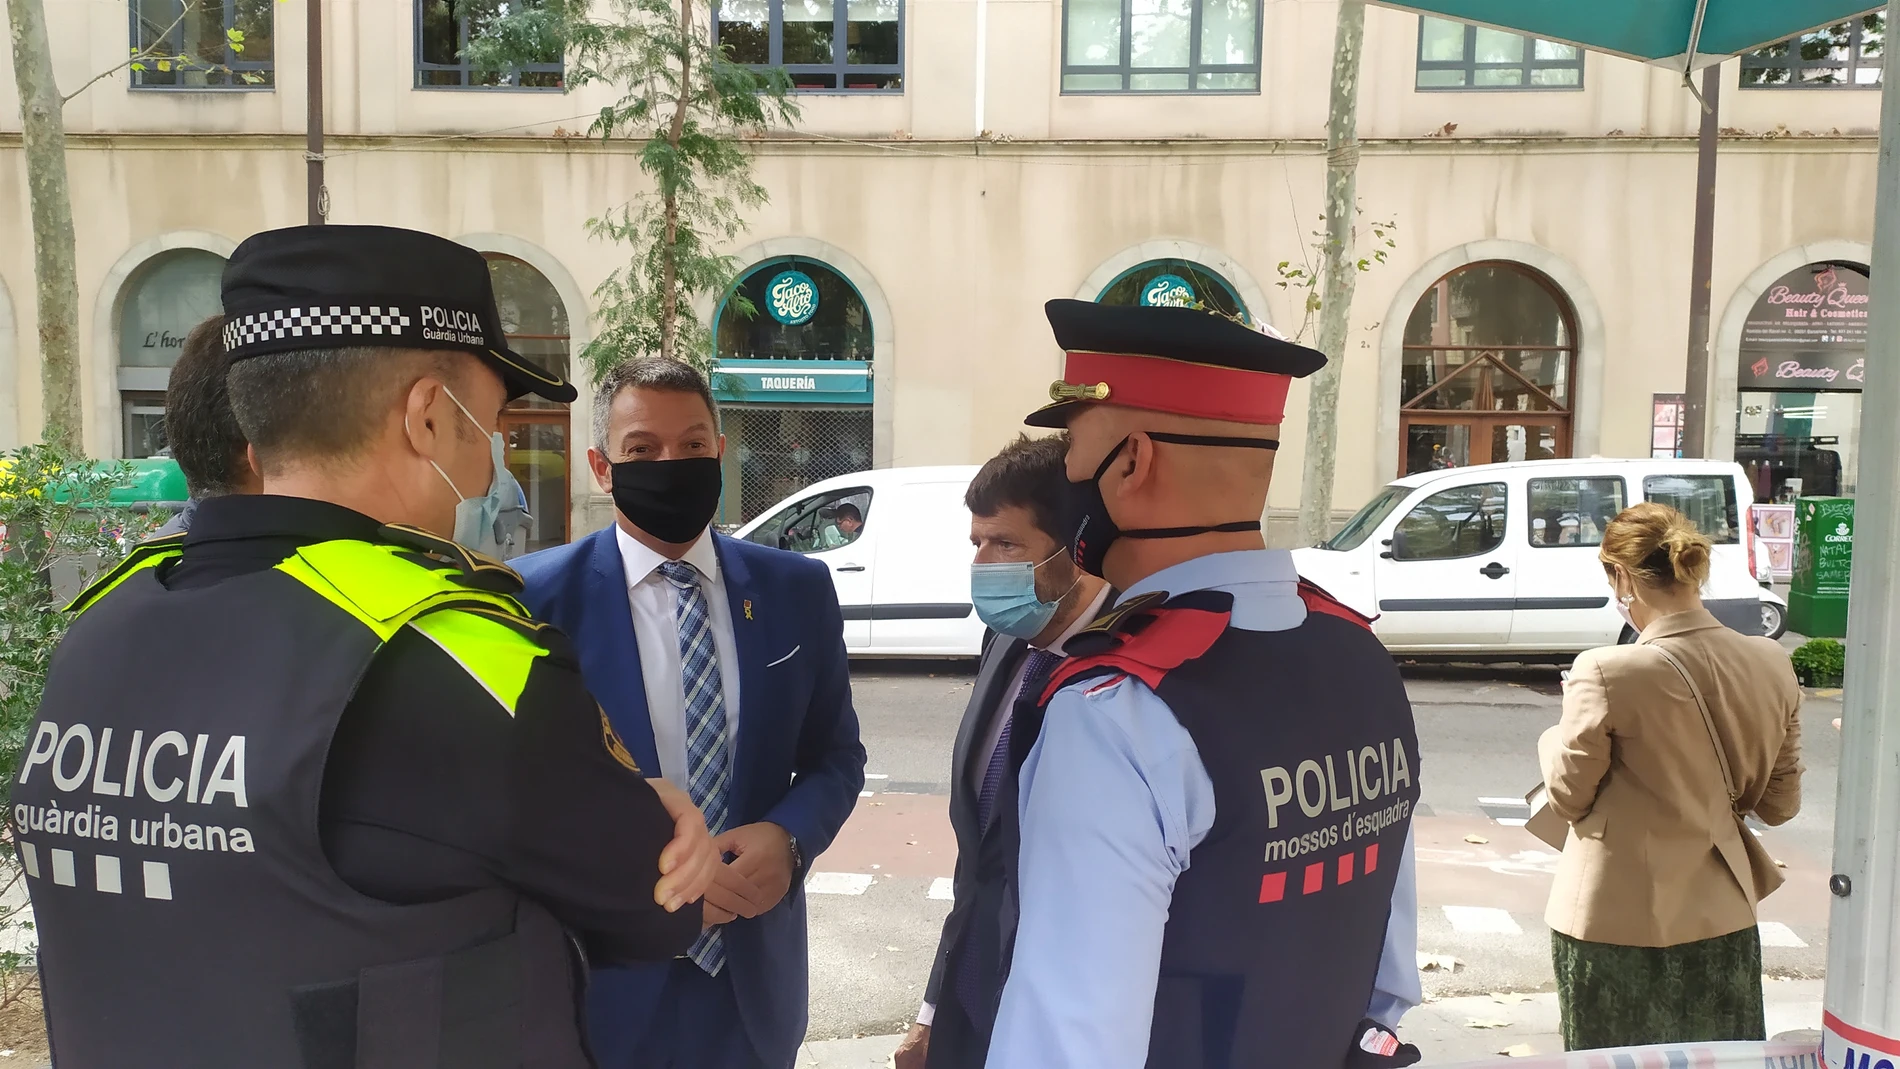 El conseller de Interior Miquel Sàmper junto al teniente de alcalde de Seguridad de Barcelona Albert Batlle, al visitar el dispositivo contra la venta de drogas en el Raval. EUROPA PRESS07/10/2020